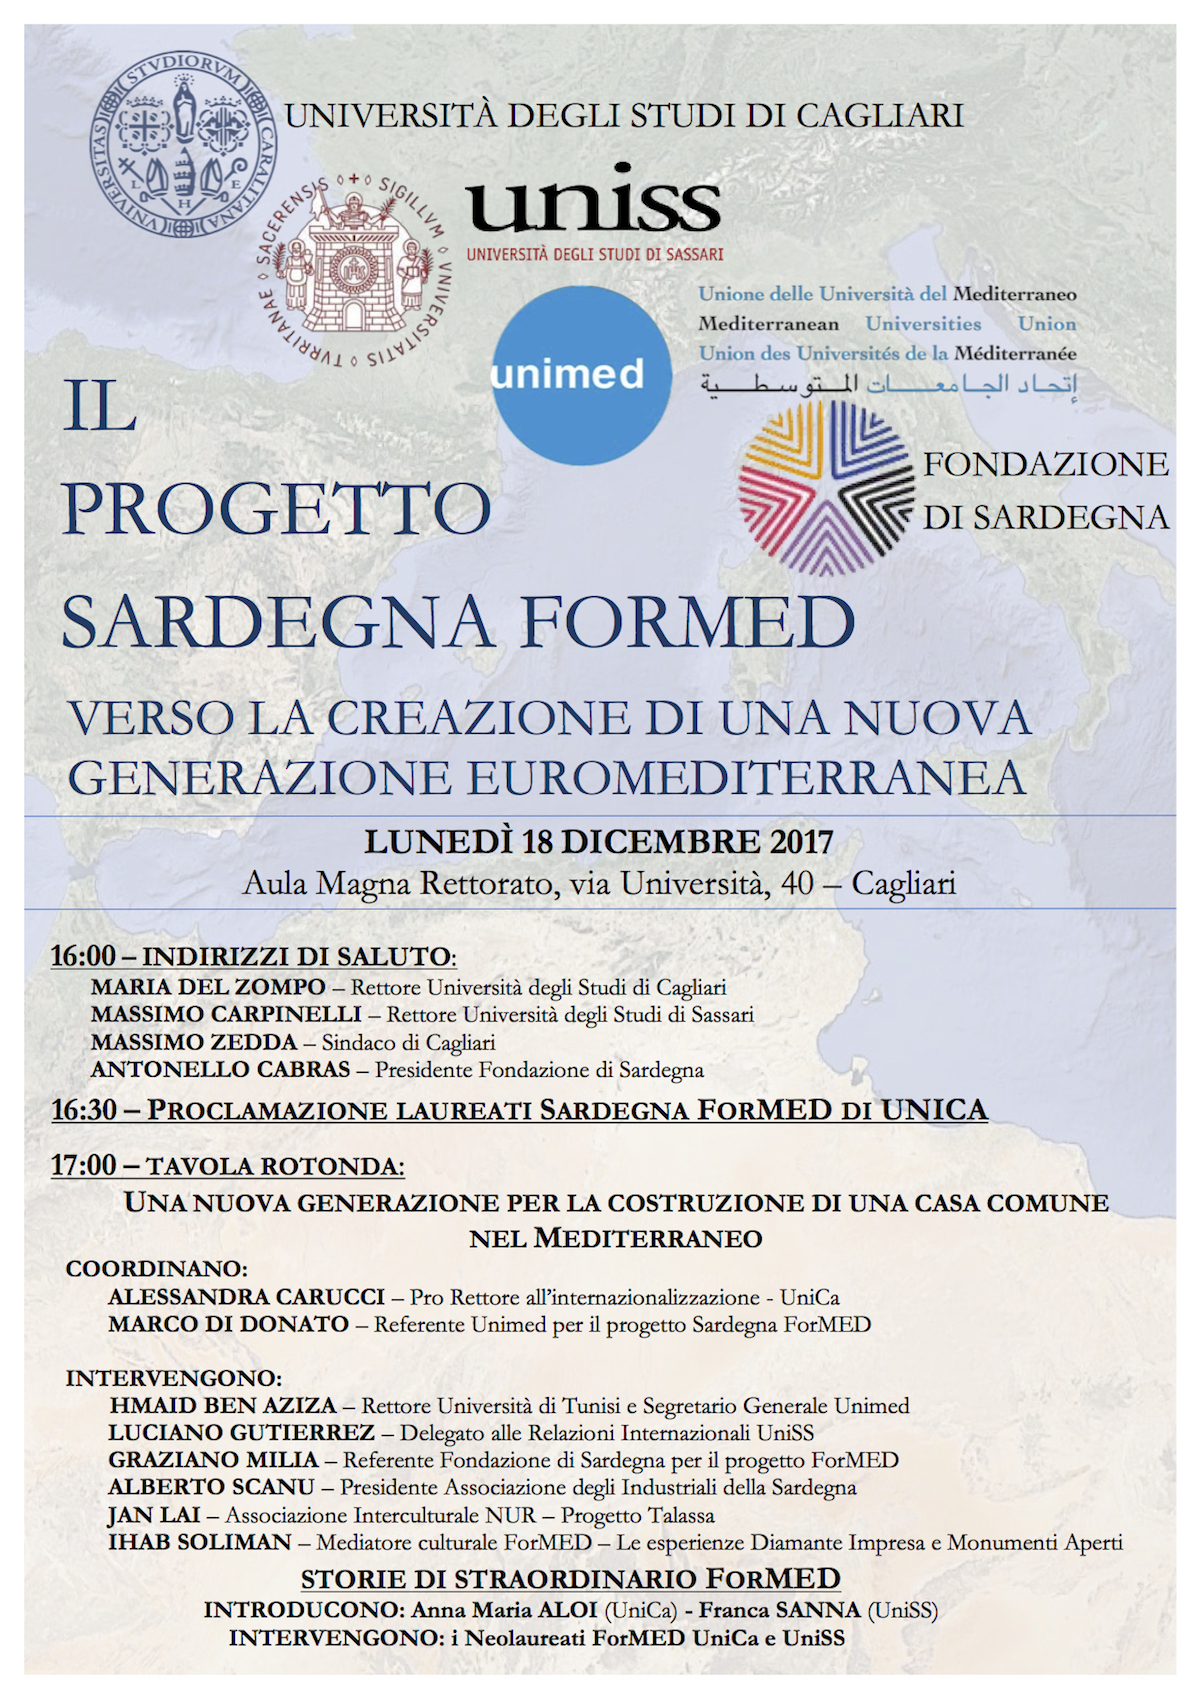 Il Progetto Sardegna Formed